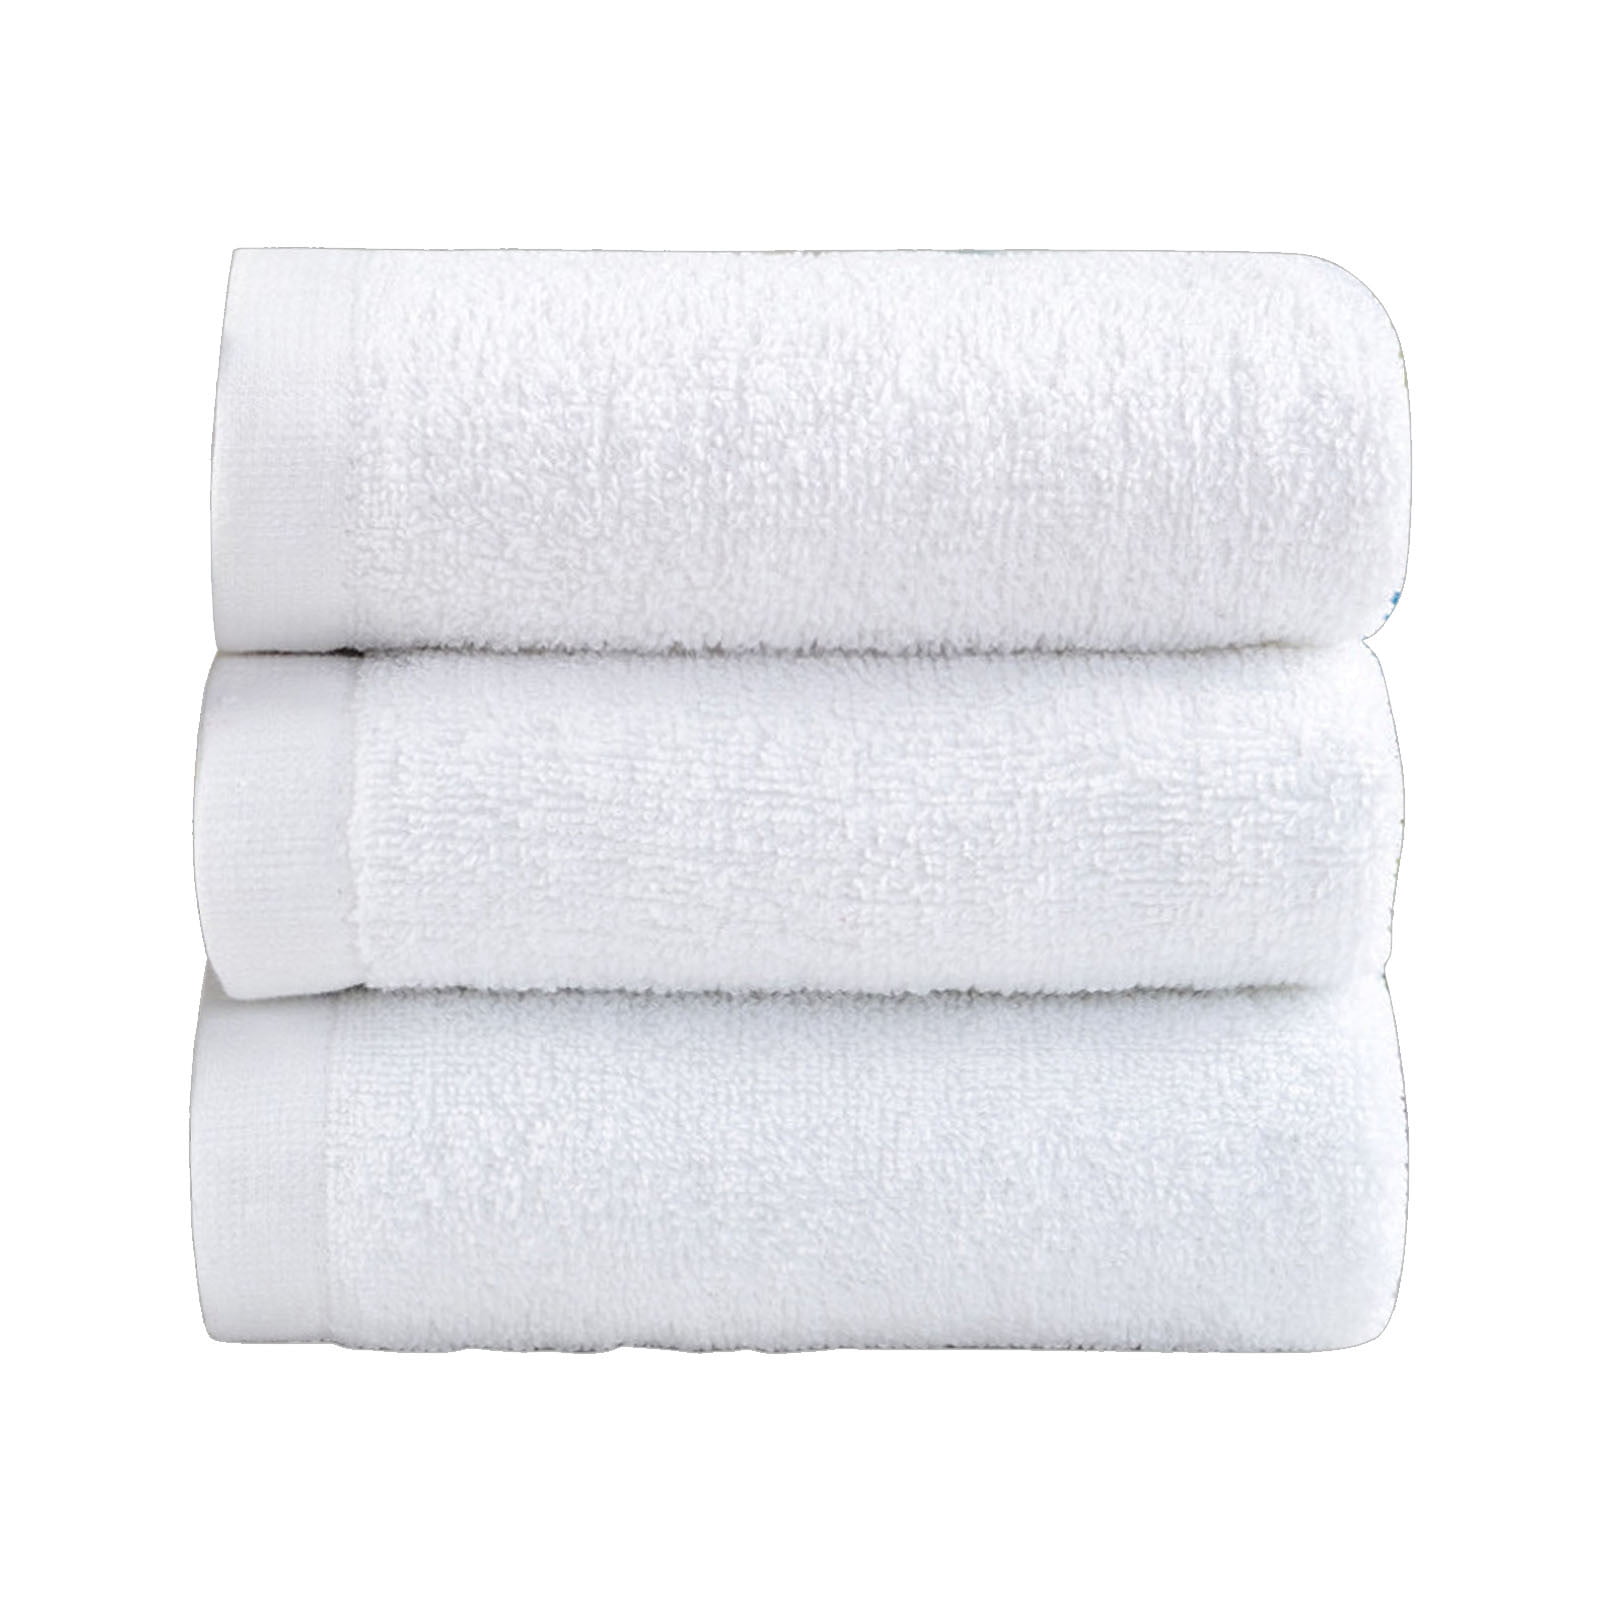 Charisma Luxury 4 Pc Hand Towels 16x30 & Wash Cloths 13x13 Bath